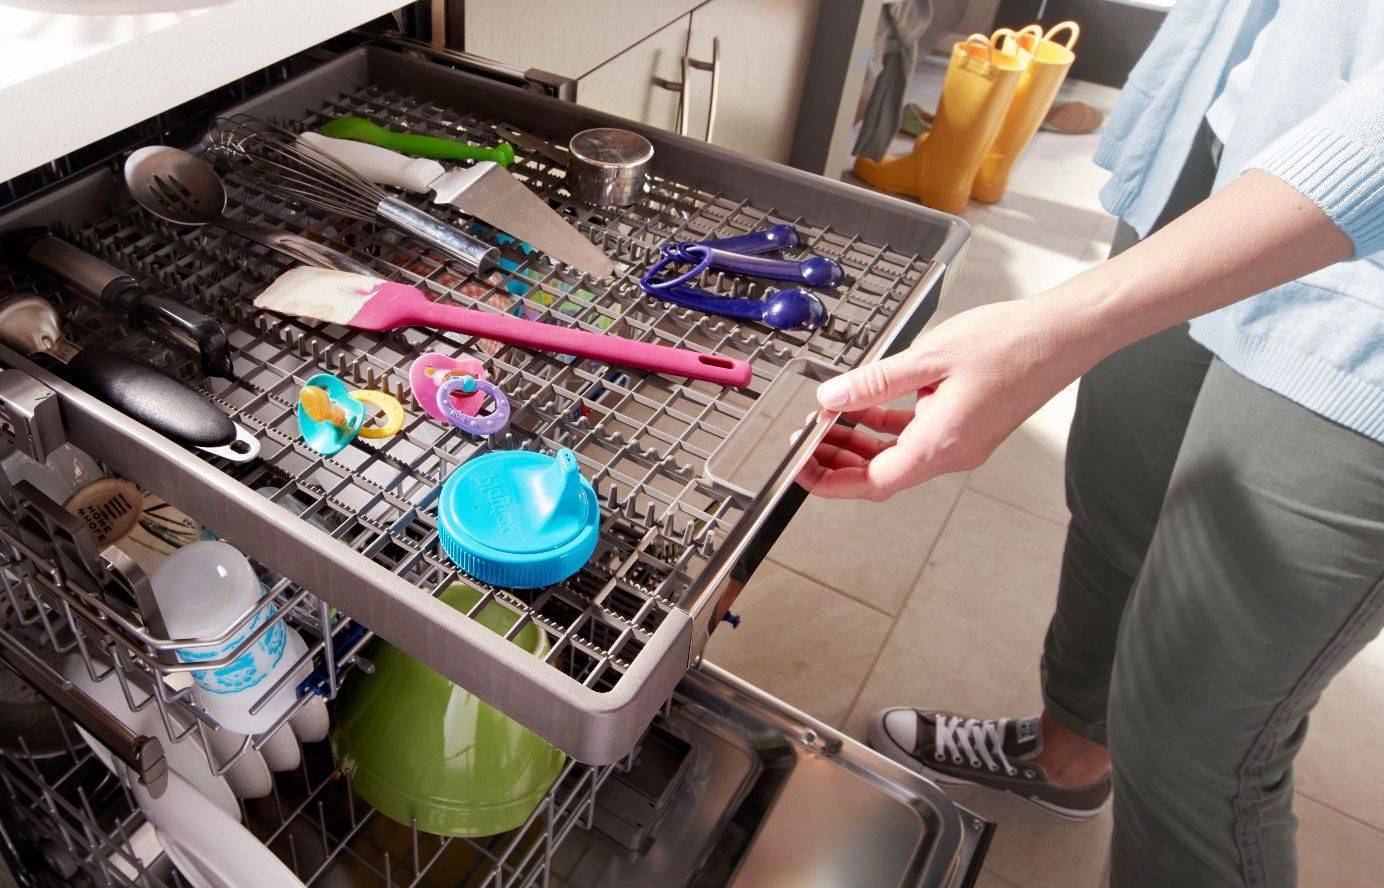 Как загружать посуду в посудомоечную машину правильно: инструкция, советы, рекомендации